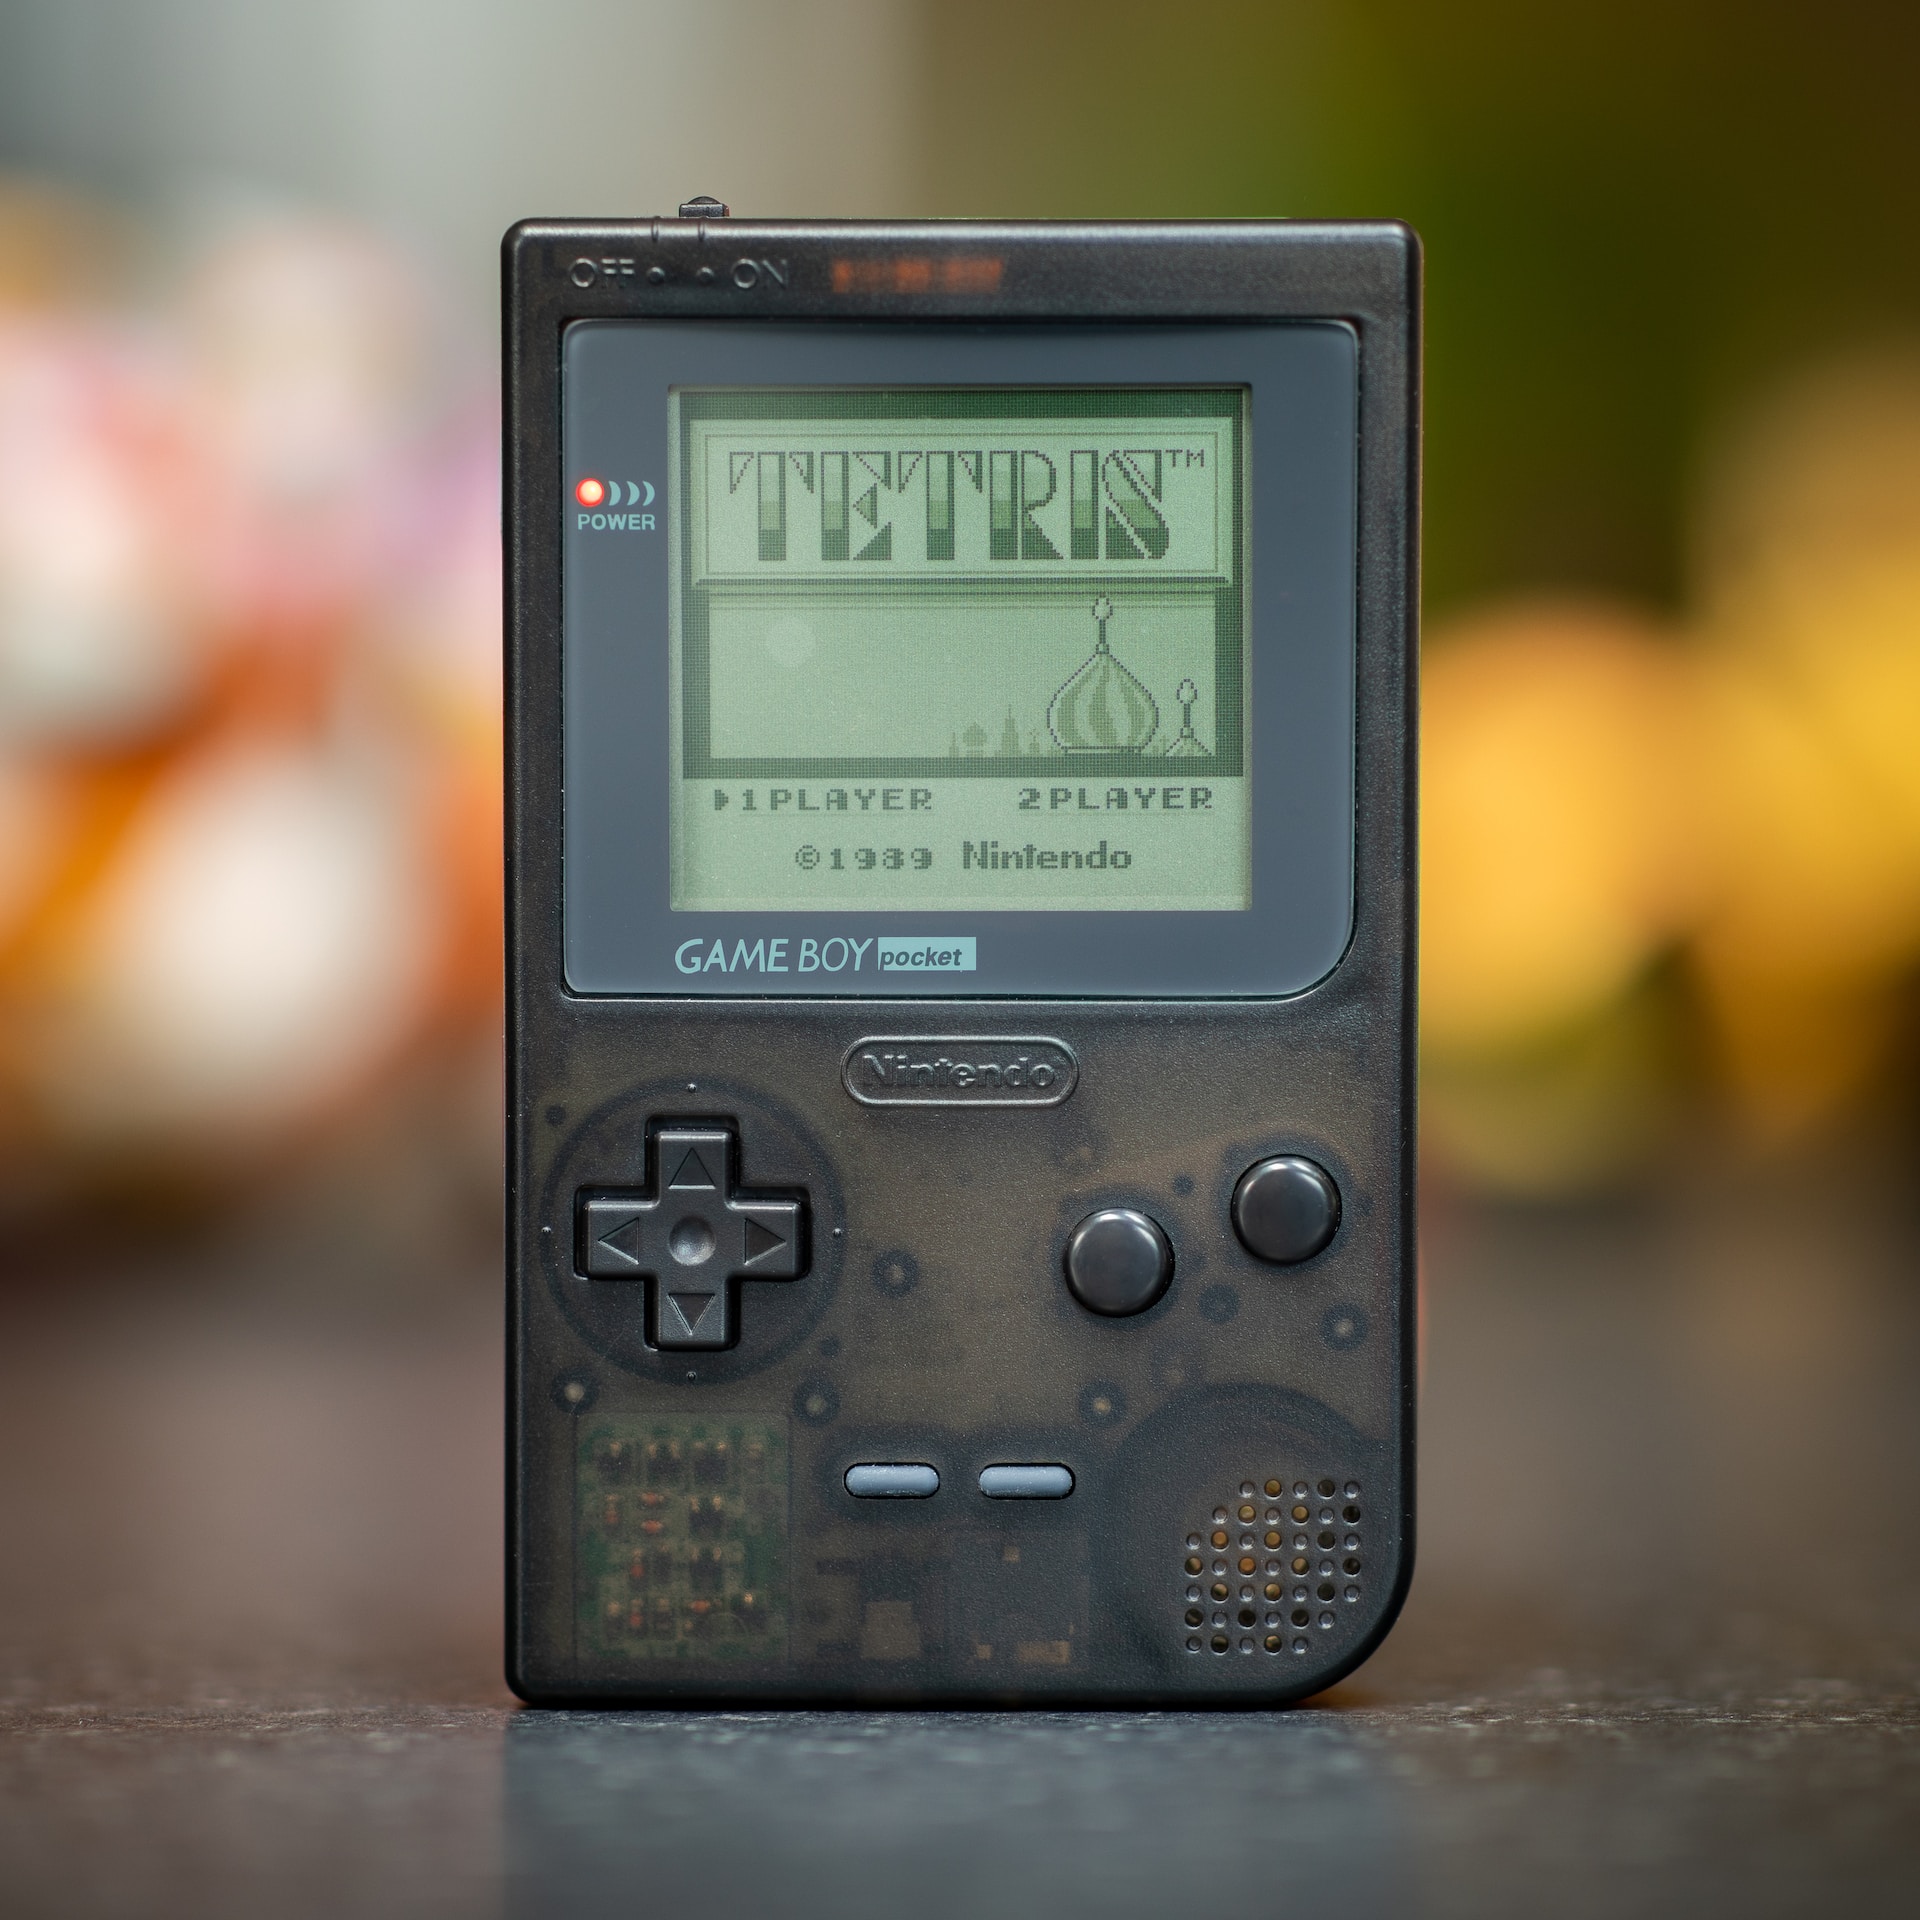 Game Boy Pocket displaying Tetris